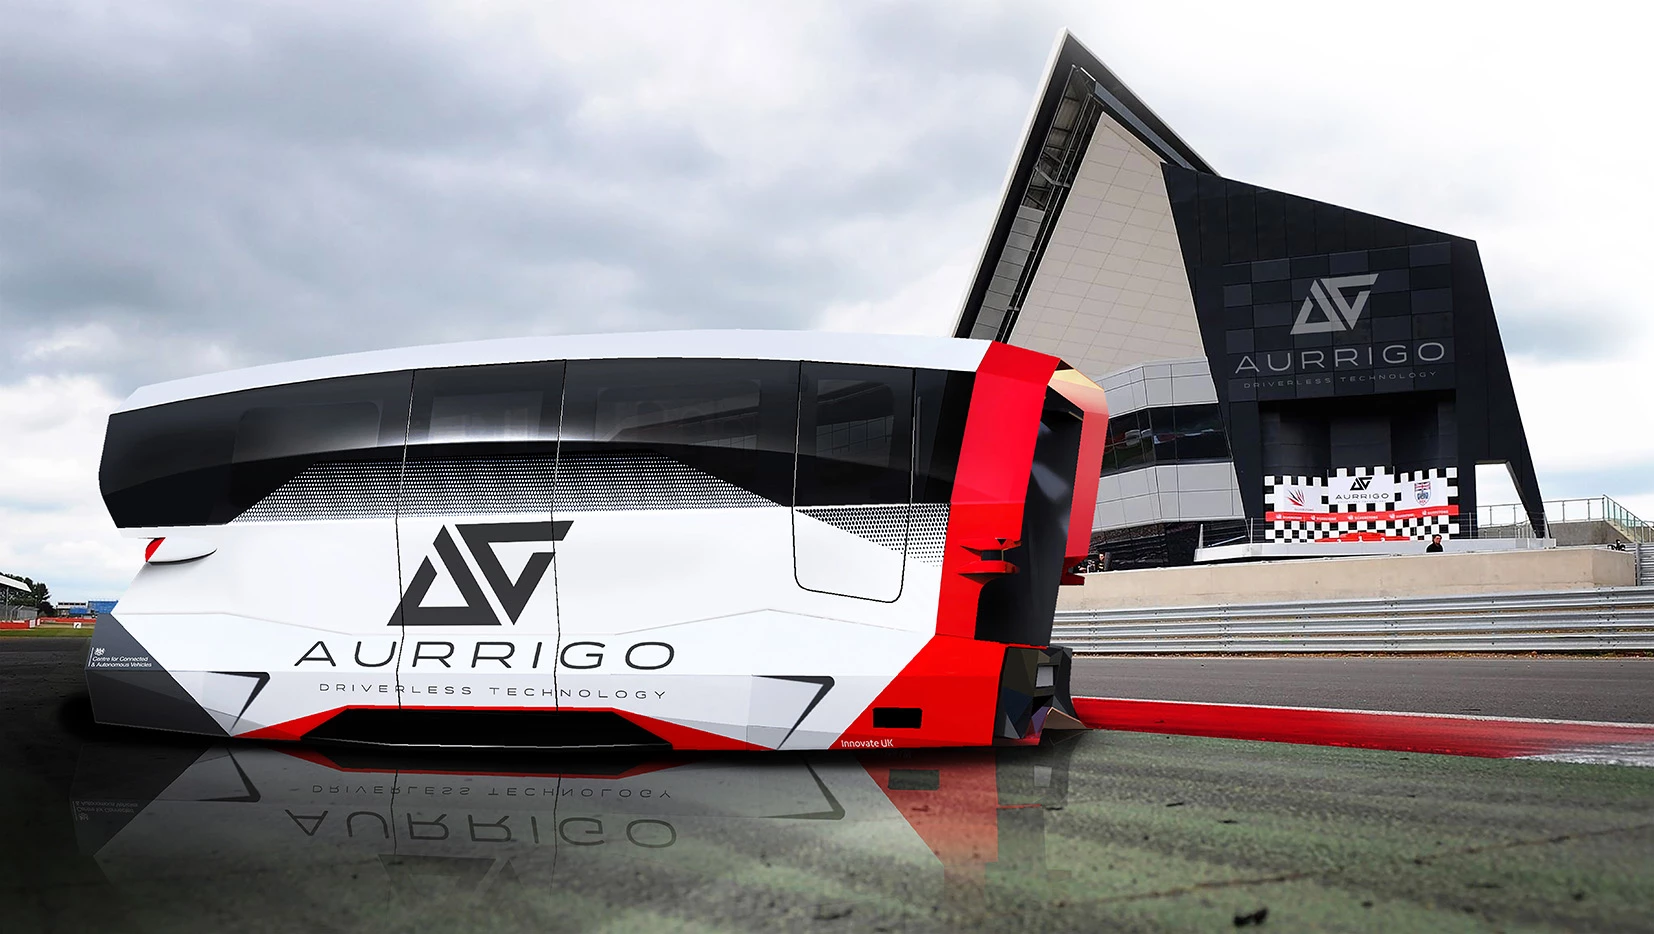 Aurrigo's autonomous shuttle